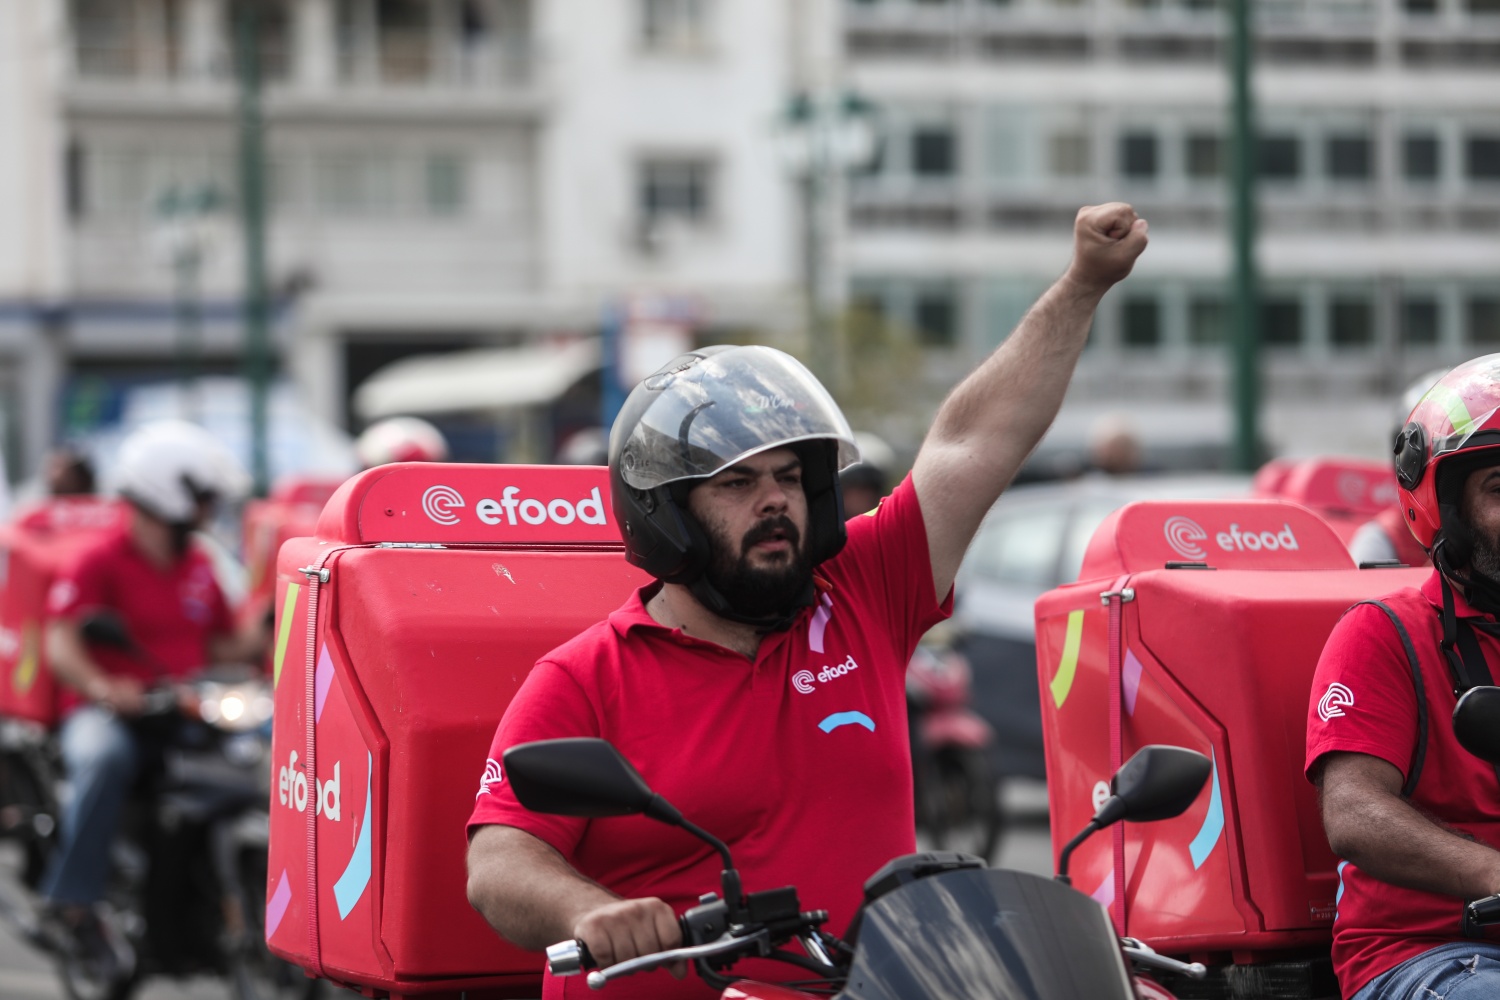 Οι εργαζόμενοι της Efood συνεχίζουν τον αγώνα: Μοτοπορείες & στάση εργασίας απέναντι στην εργοδοτική αυθαιρεσία